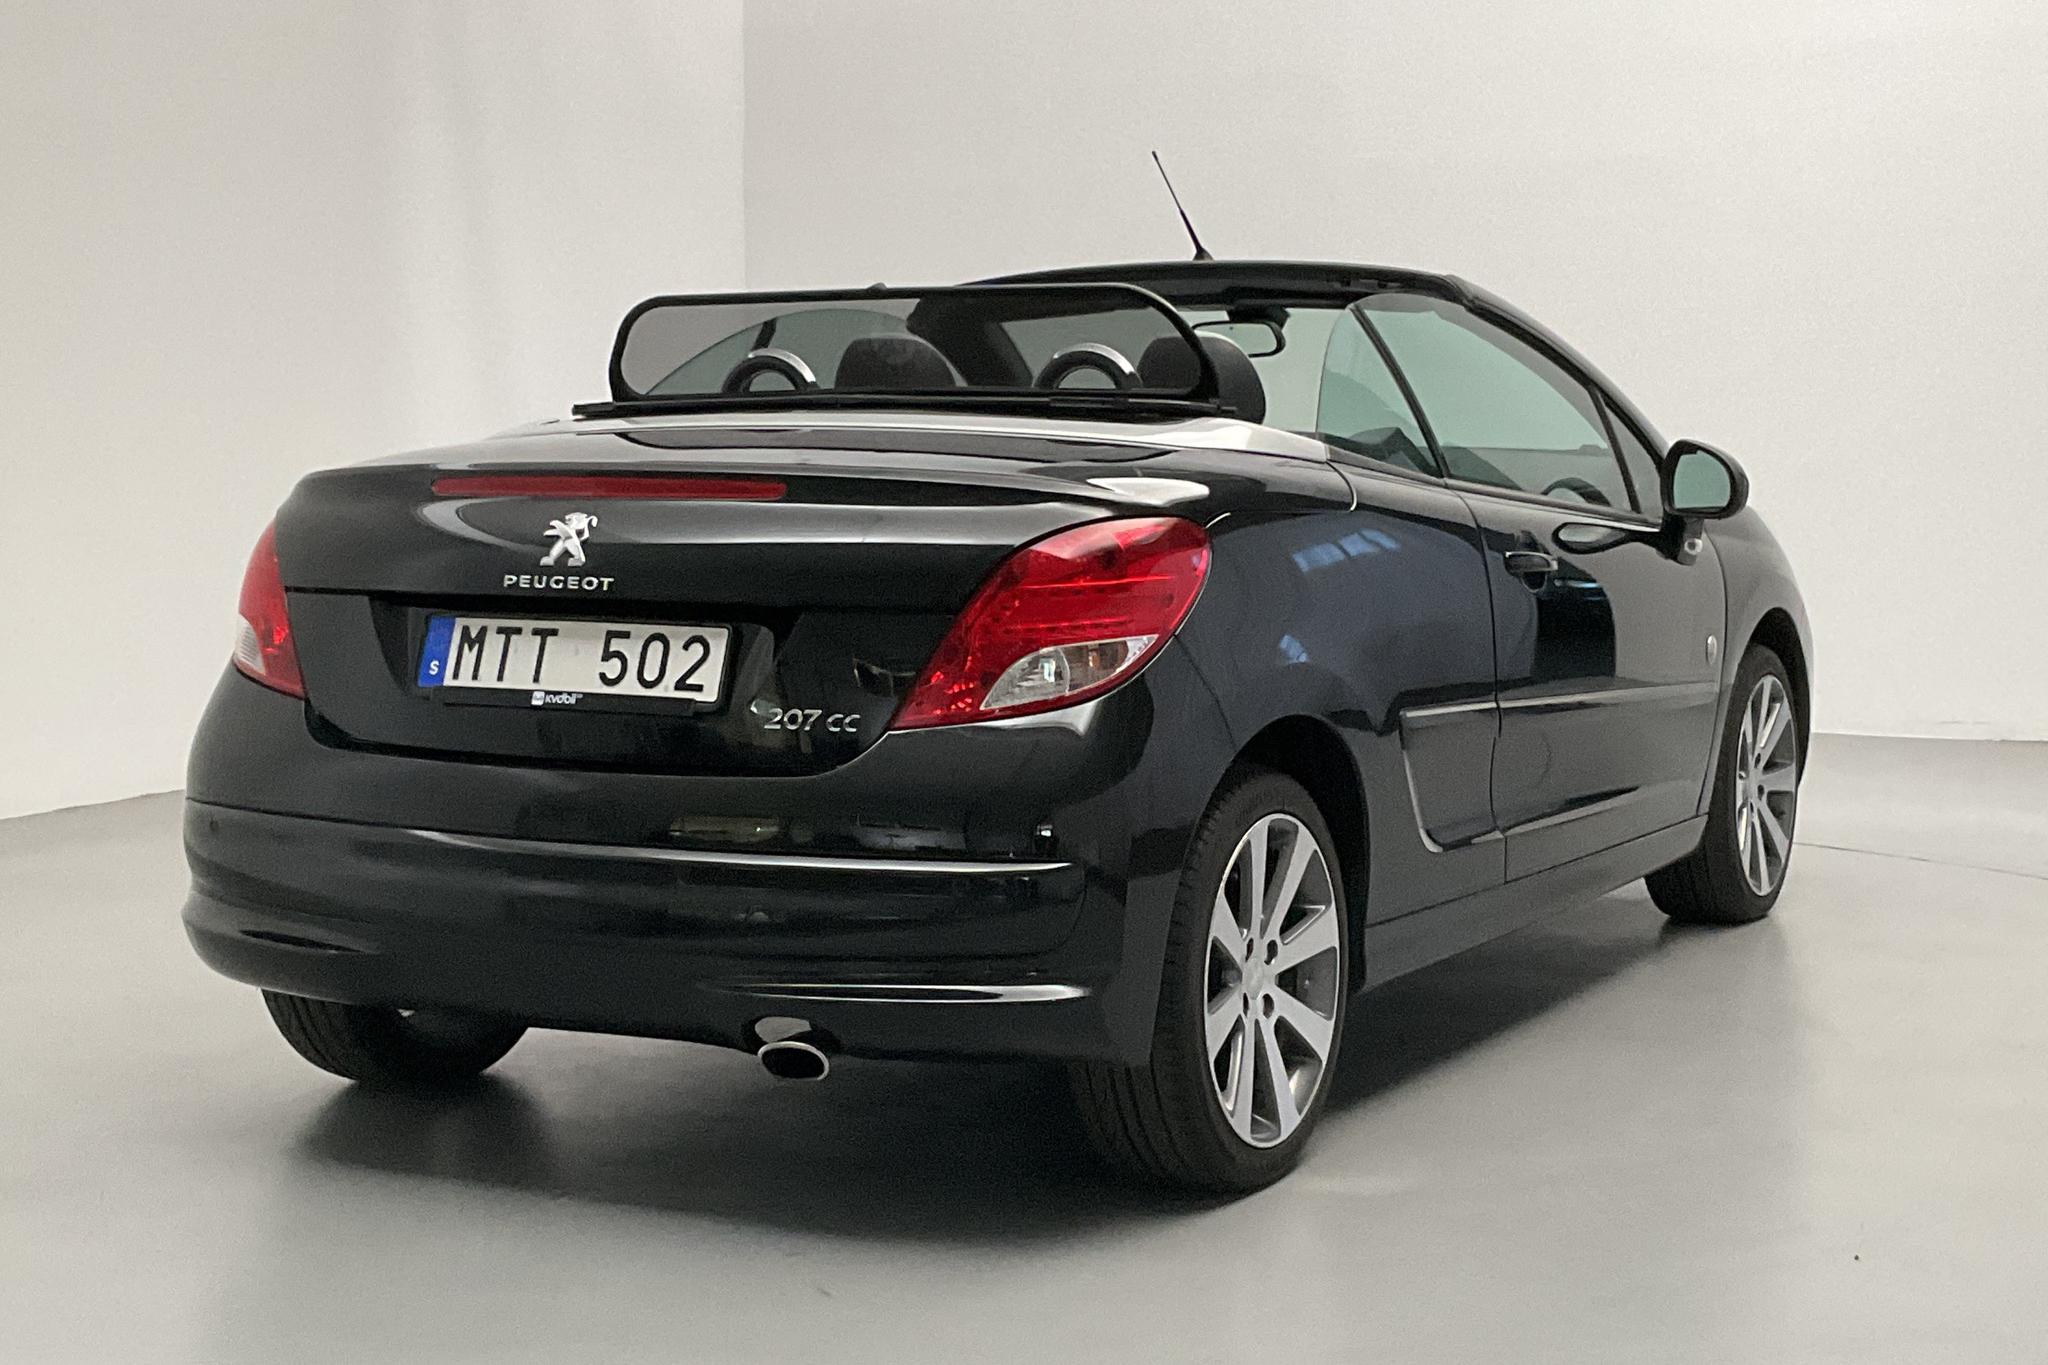 Peugeot 207 CC 1.6 VTi (120hk) - 65 590 km - Manual - black - 2012